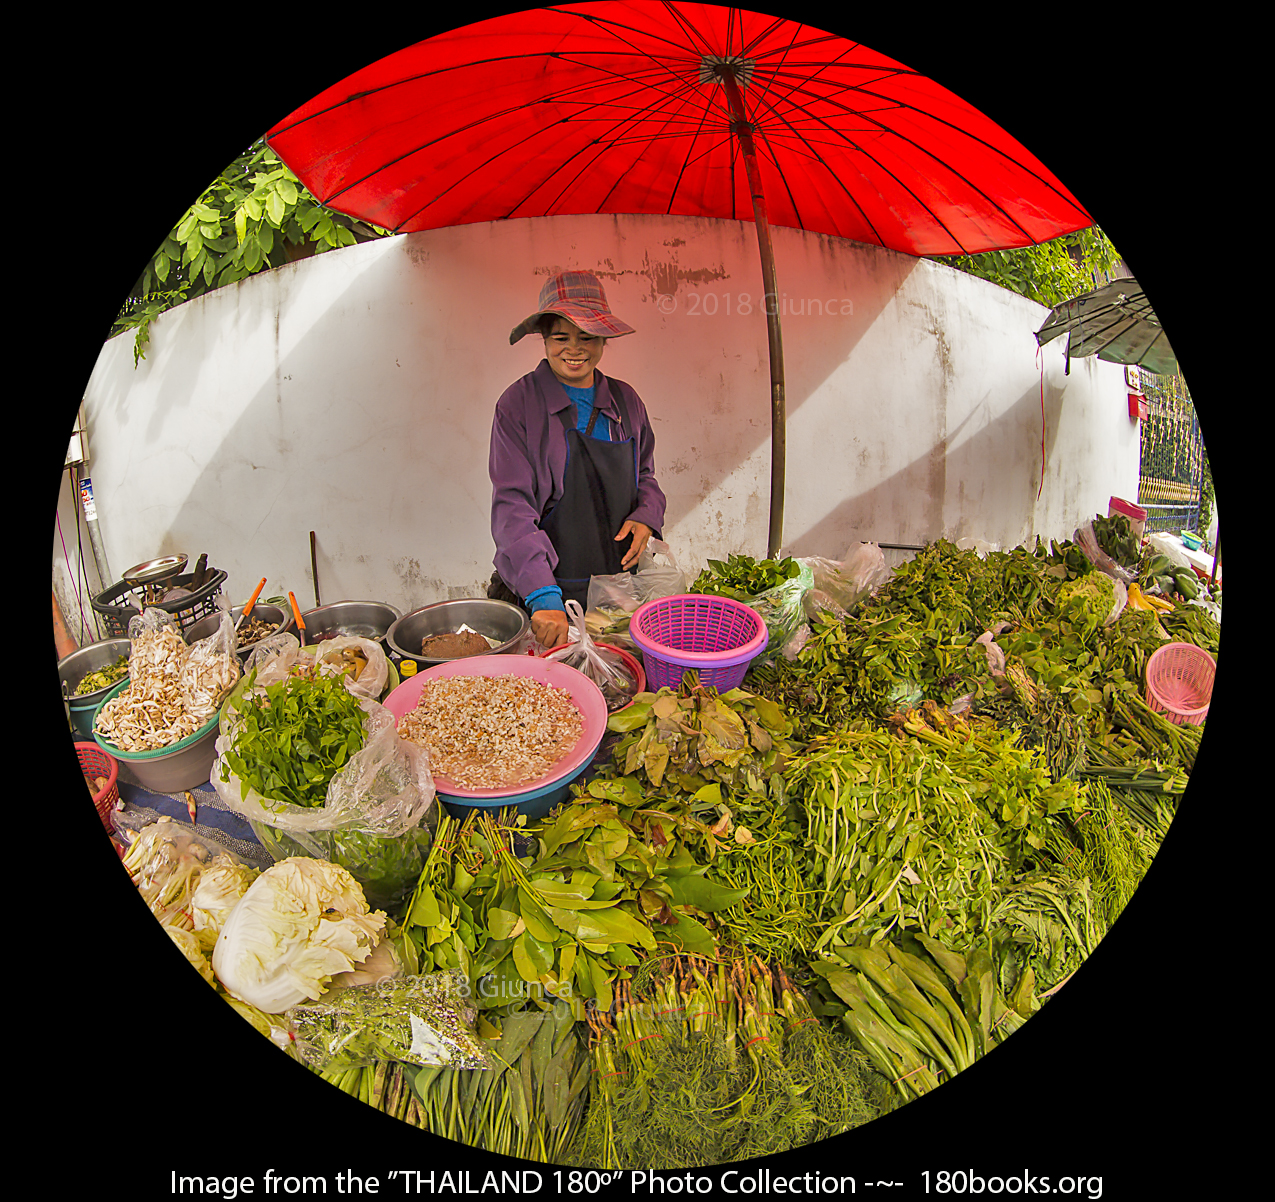 Image of Vegetable vendor